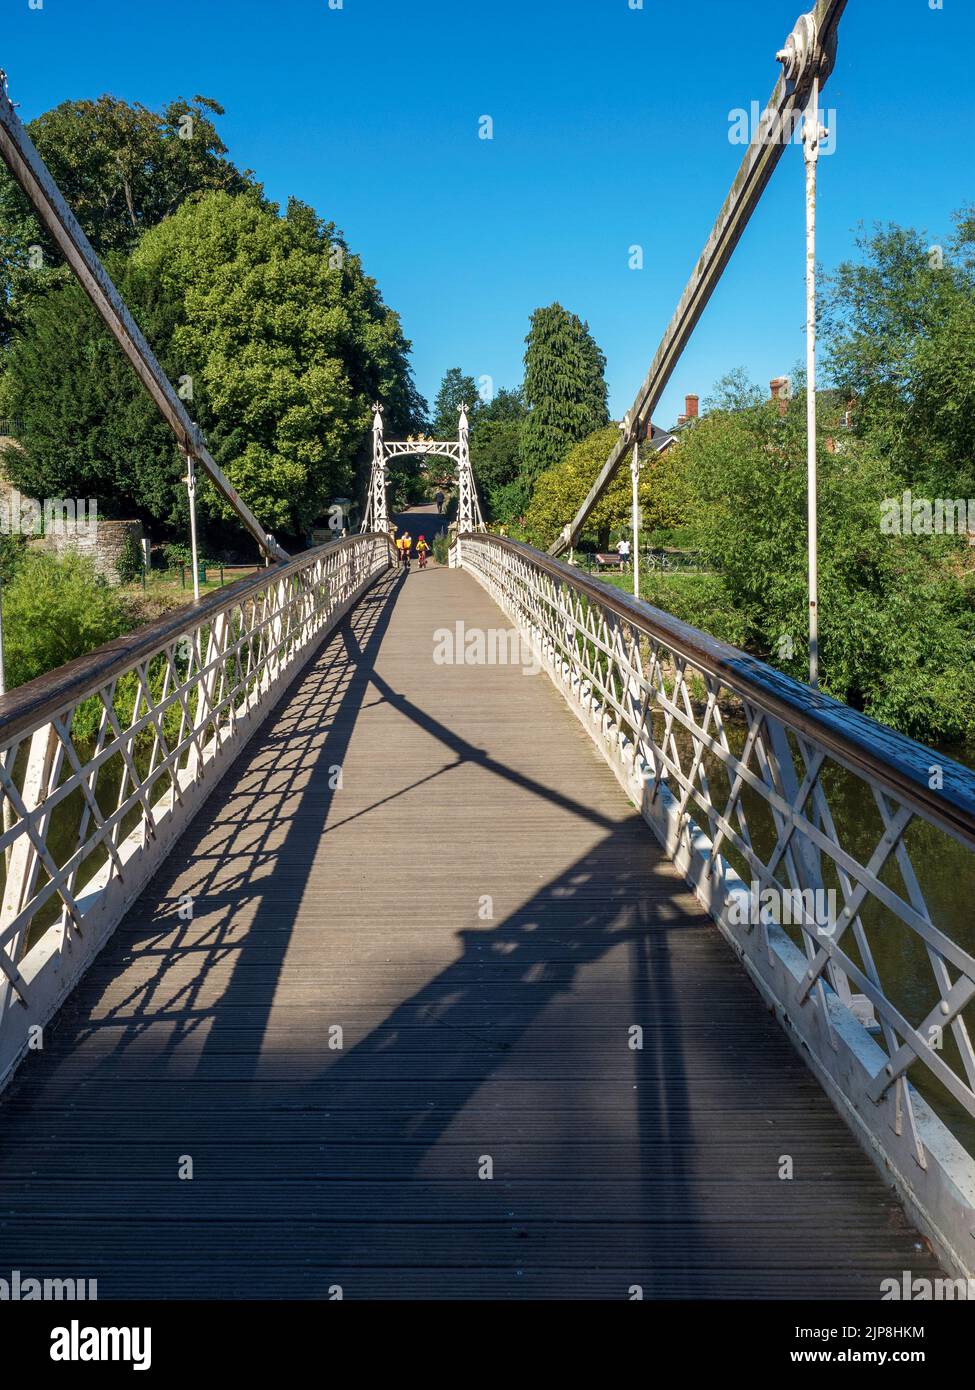 Pont de Victoria au-dessus de la rivière Wye érigé en 1897 pour le jubilé de diamant de la reine Victoria Hereford Herefordshire Angleterre Banque D'Images